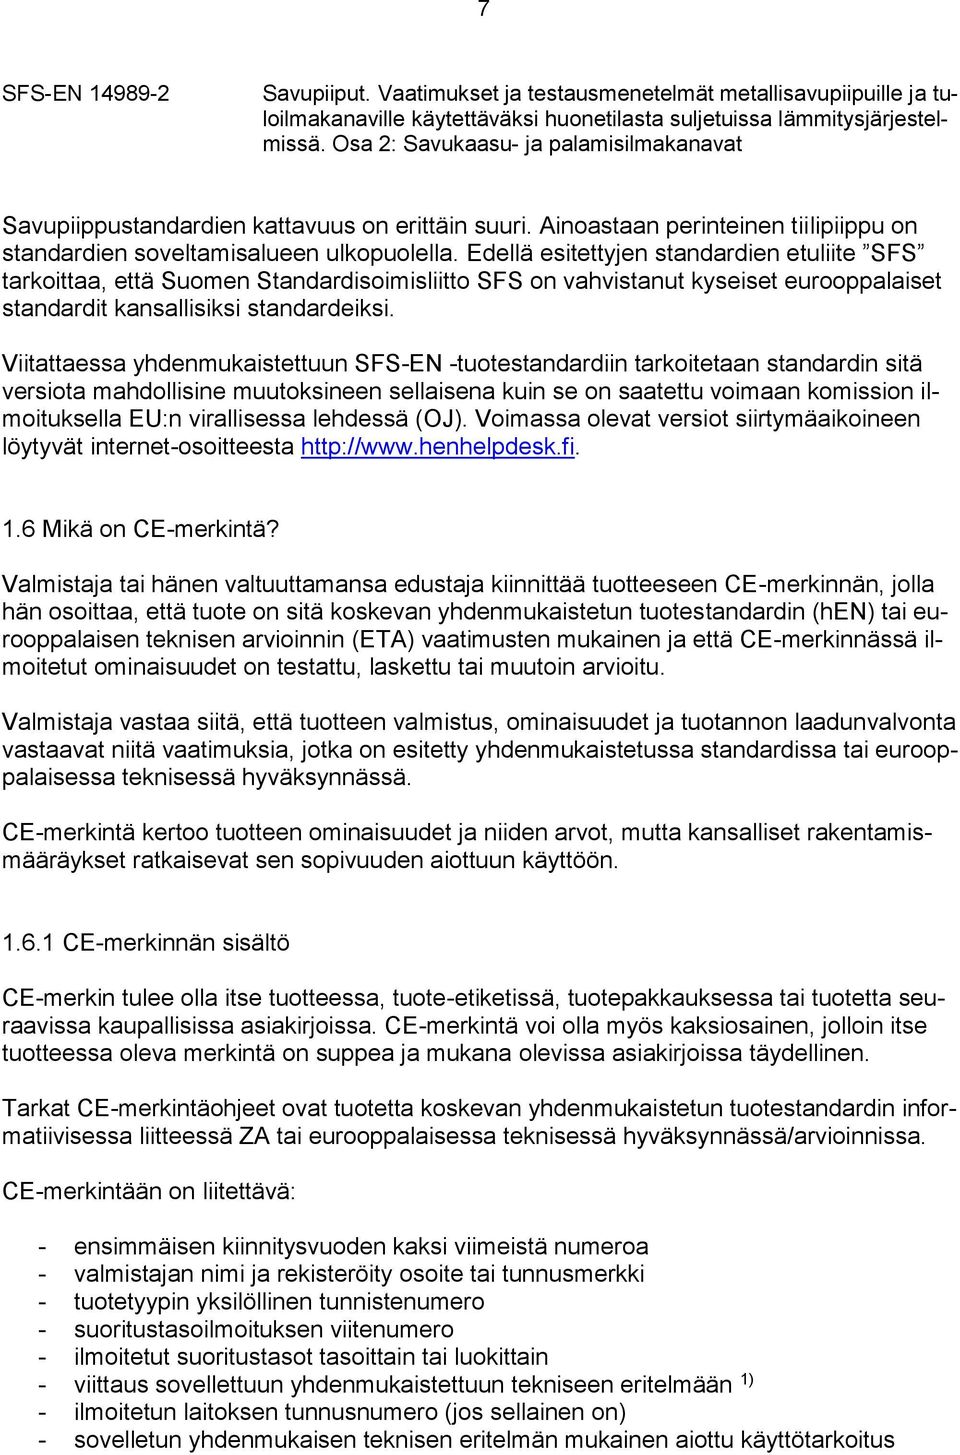 Edellä esitettyjen standardien etuliite SFS tarkoittaa, että Suomen Standardisoimisliitto SFS on vahvistanut kyseiset eurooppalaiset standardit kansallisiksi standardeiksi.